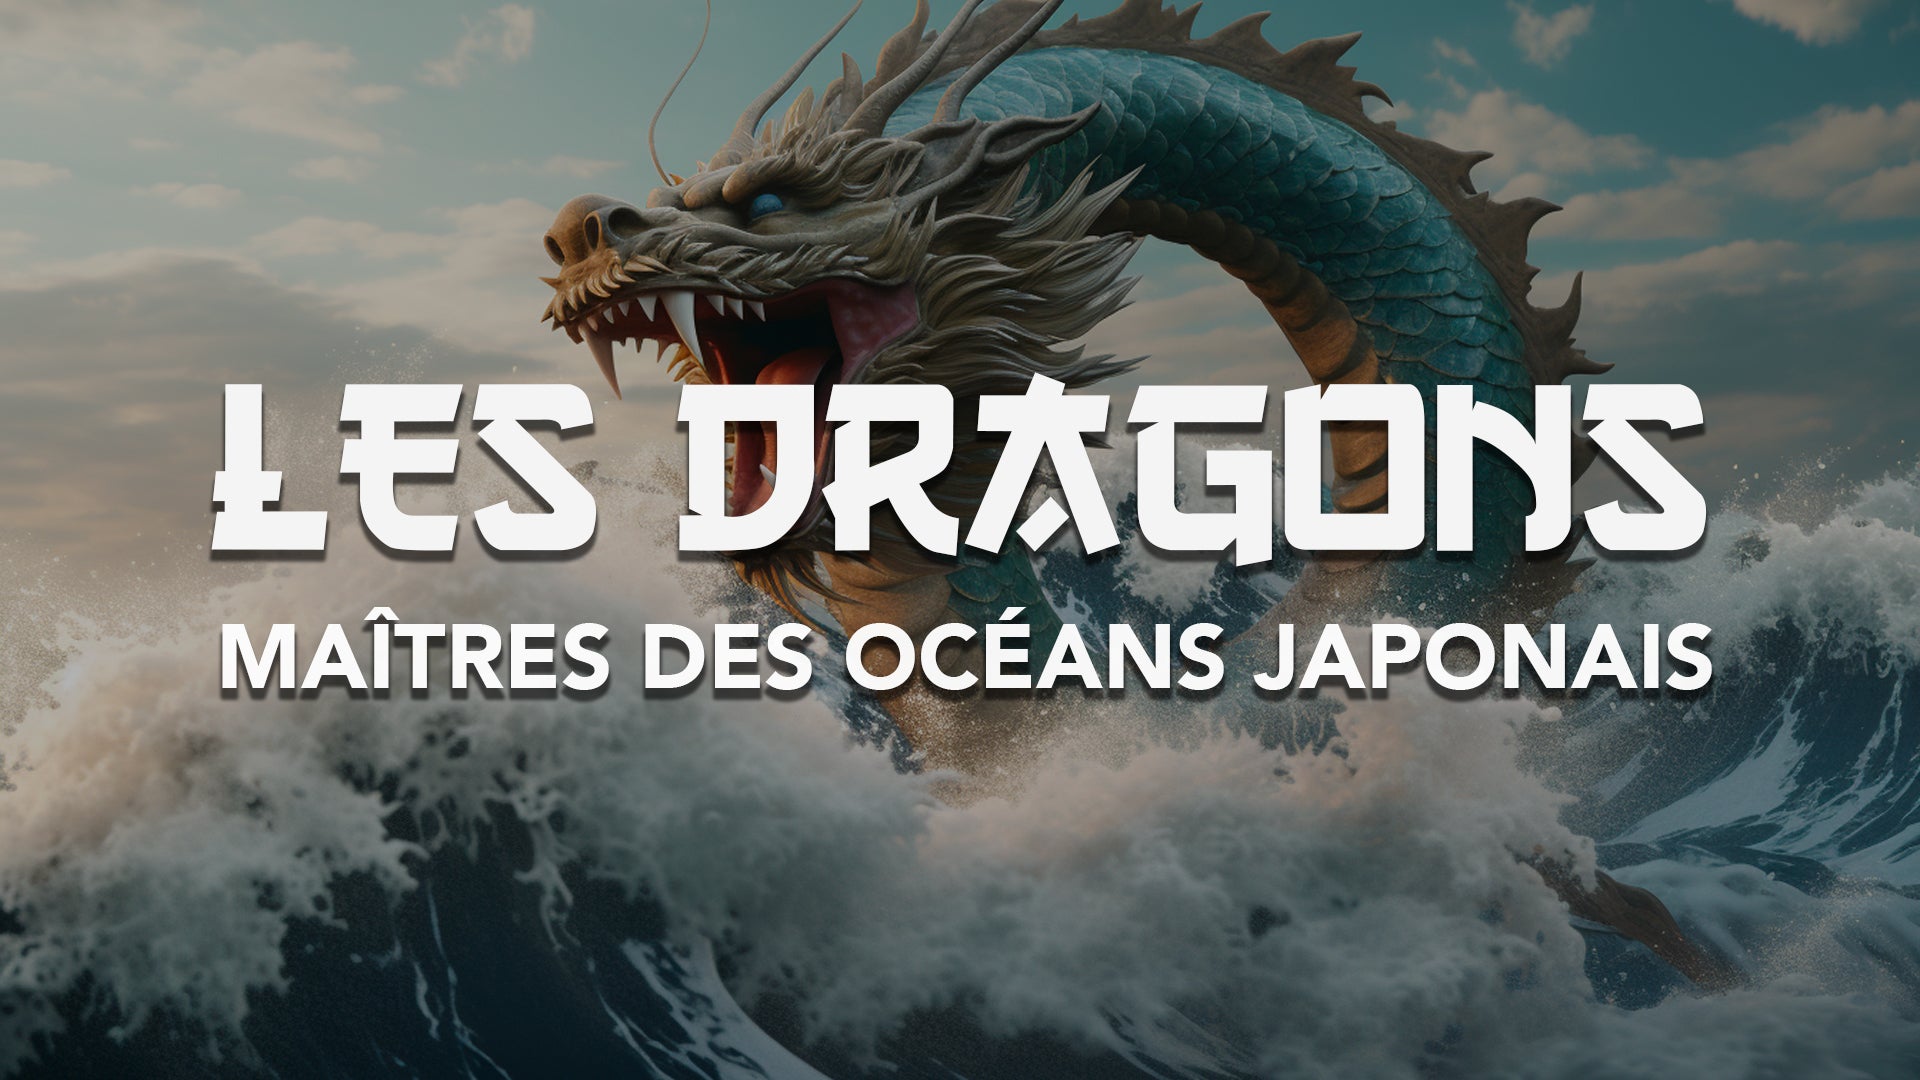 En savoir plus sur les dragons chinois